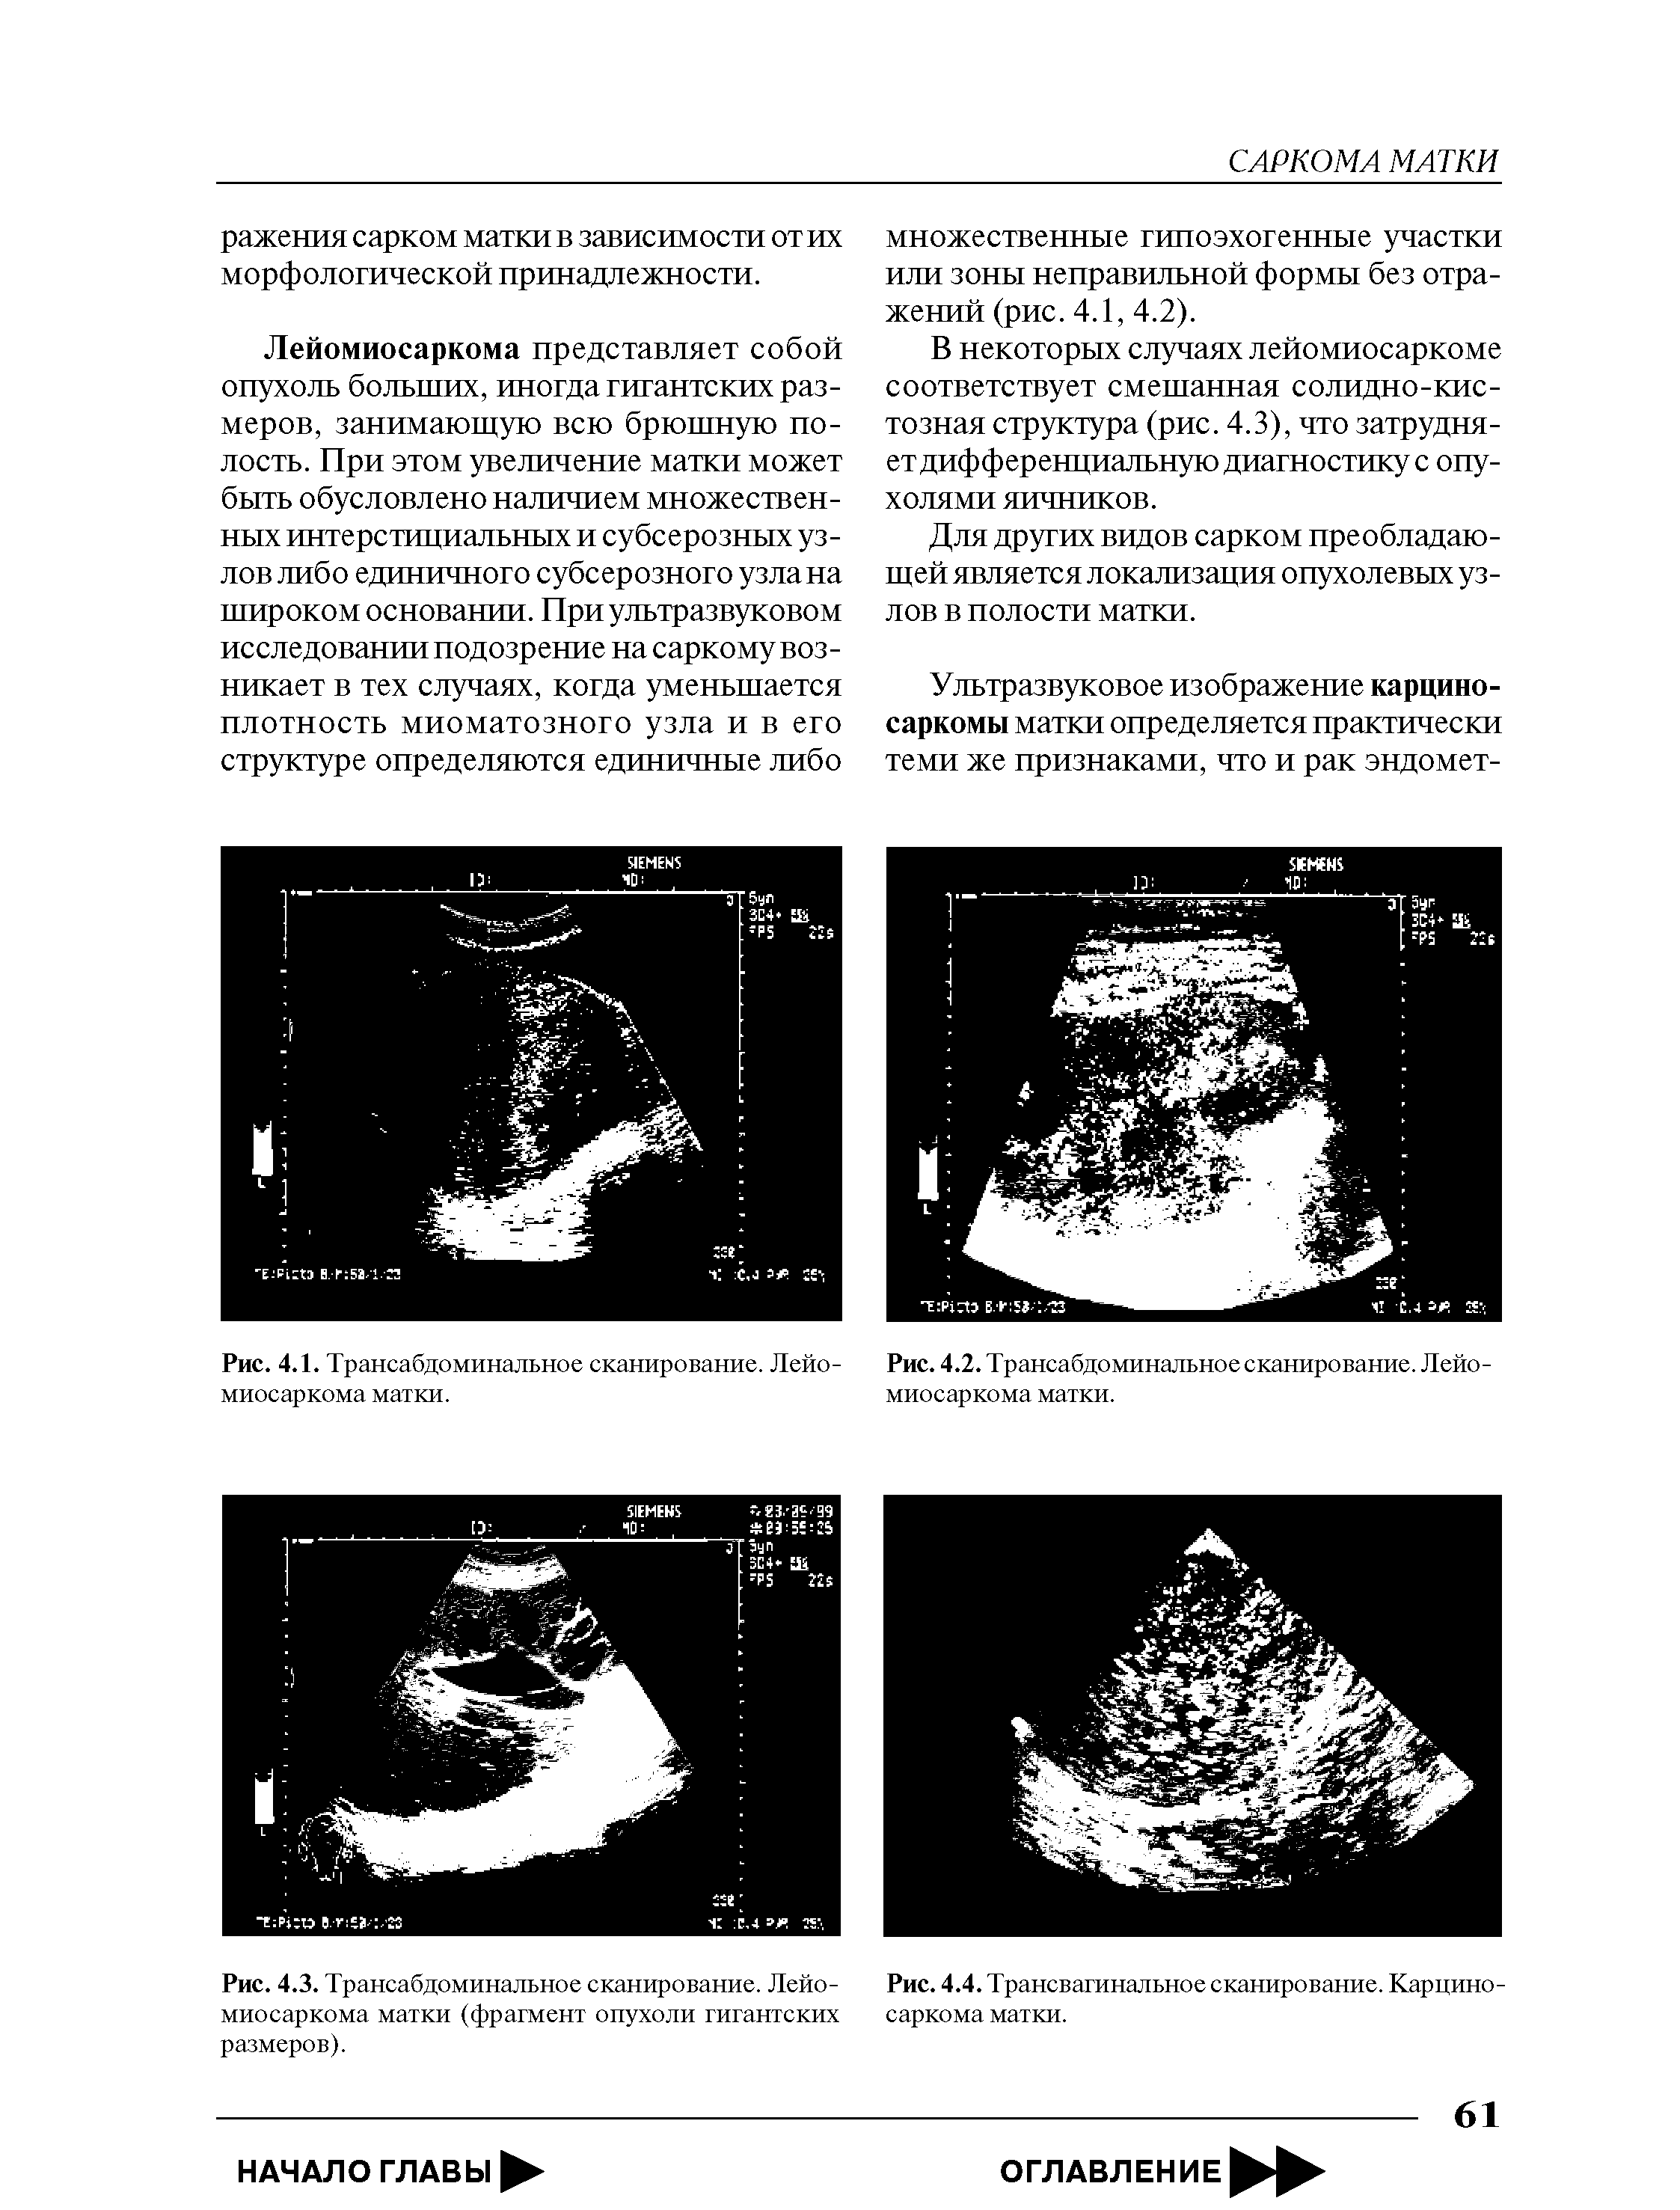 Рис. 4.3. Трансабдоминальное сканирование. Лейомиосаркома матки (фрагмент опухоли гигантских размеров).